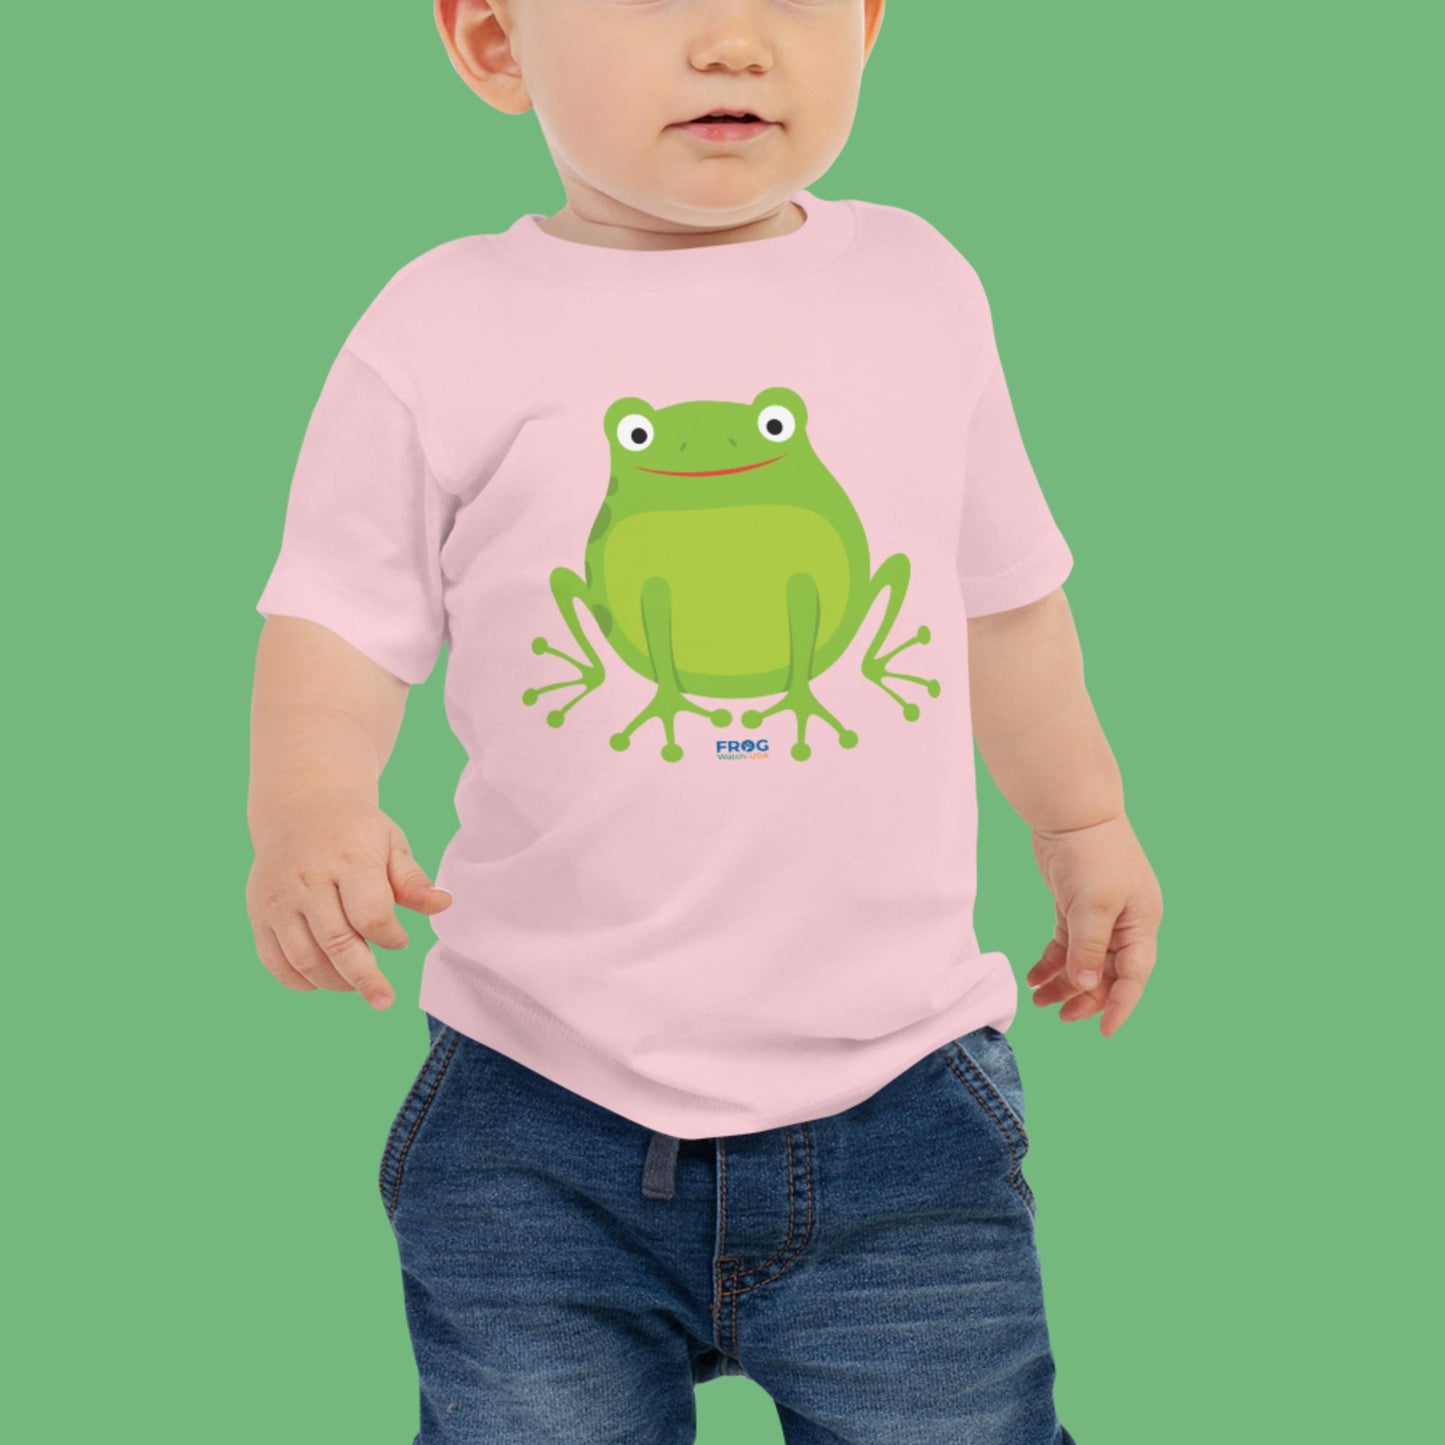 Big Happy Frog - Baby Tee